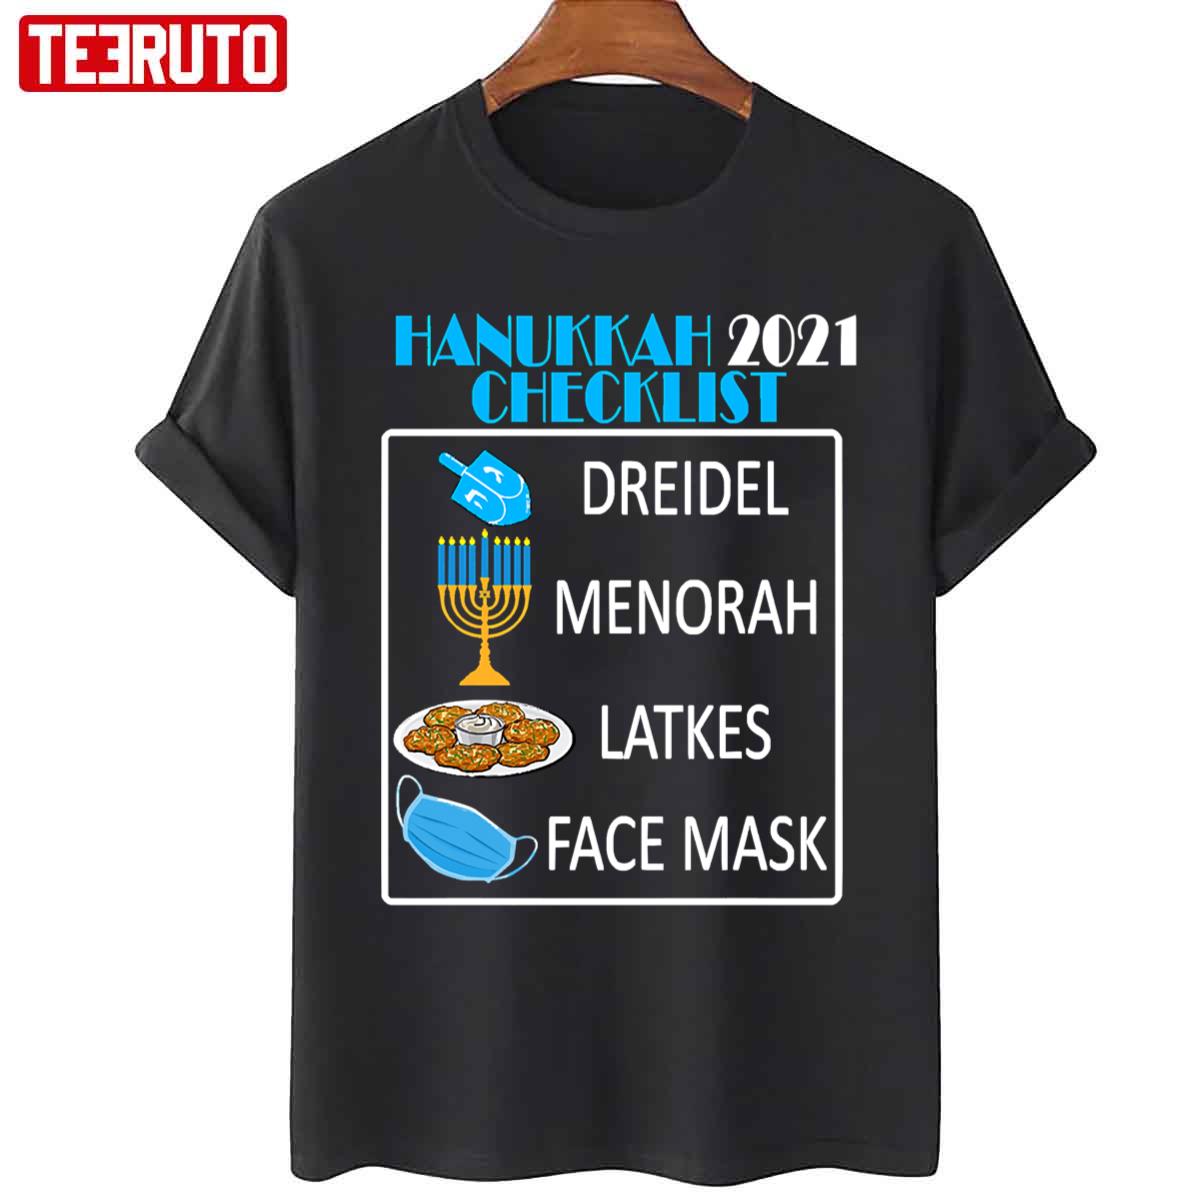 Hanukkah 2021 Checklist Chanukah Unisex T-Shirt